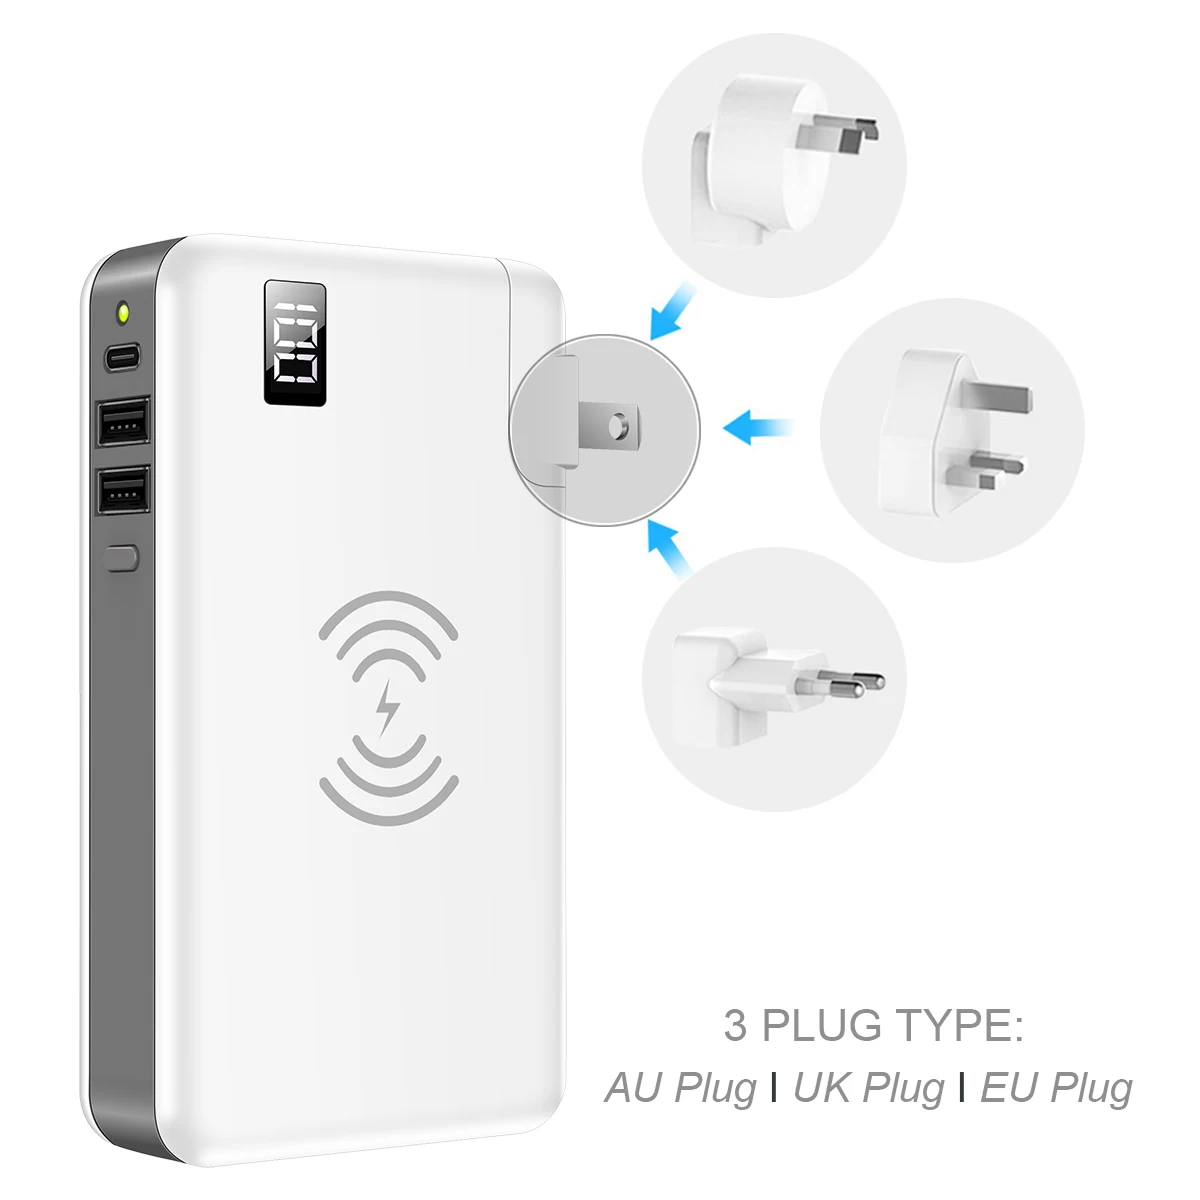 Внешний аккумулятор 10000 мАч для Xiaomi для iPhone 2 USB внешний аккумулятор Qi беспроводной Банк питания зарядное устройство ЖК-дисплей Быстрая зарядка AU/EU/UK/US